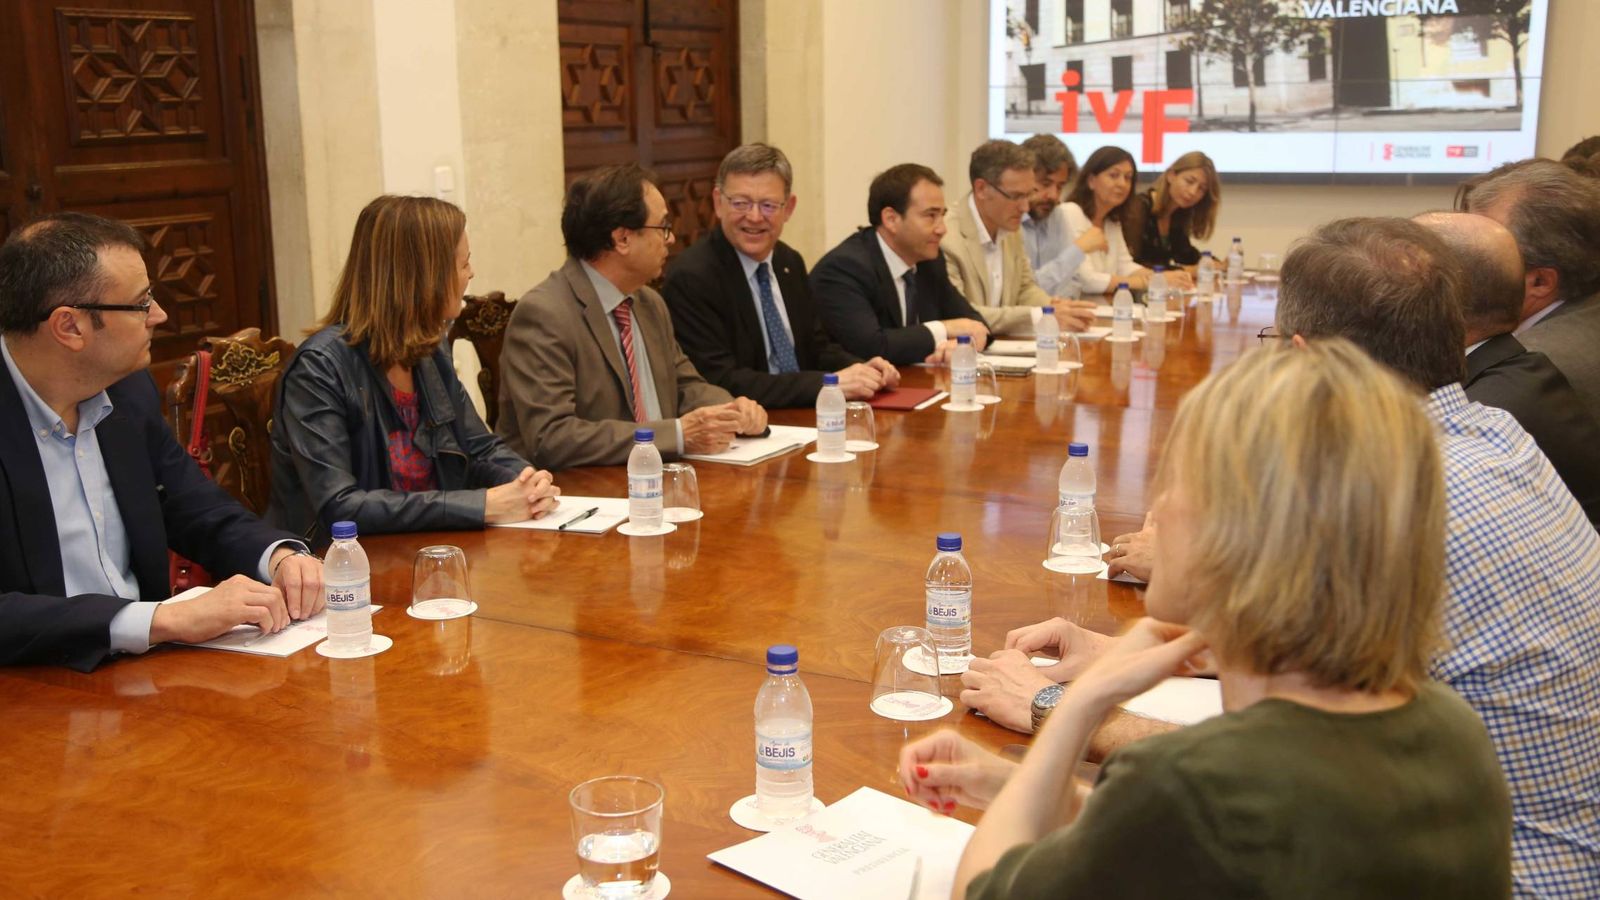 Foto: Ximo Puig, este lunes, flanqueado por Vicent Soler, Manuel Illueca y miembros del Instituto Valenciano de Finanzas. (GVA)